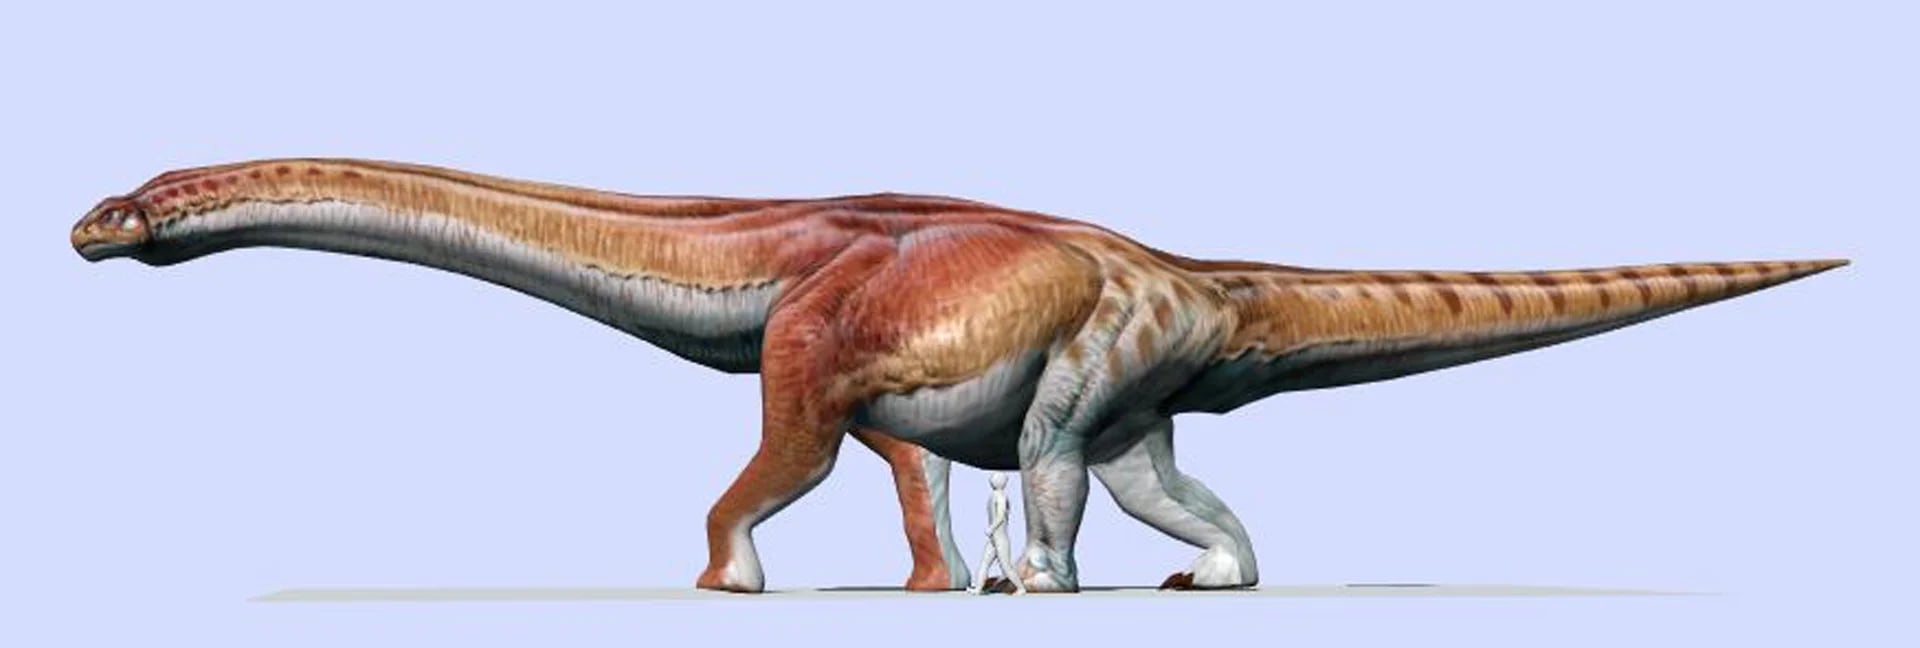 El Patagotitan mayorum, en comparación con el tamaño humano (MEF)